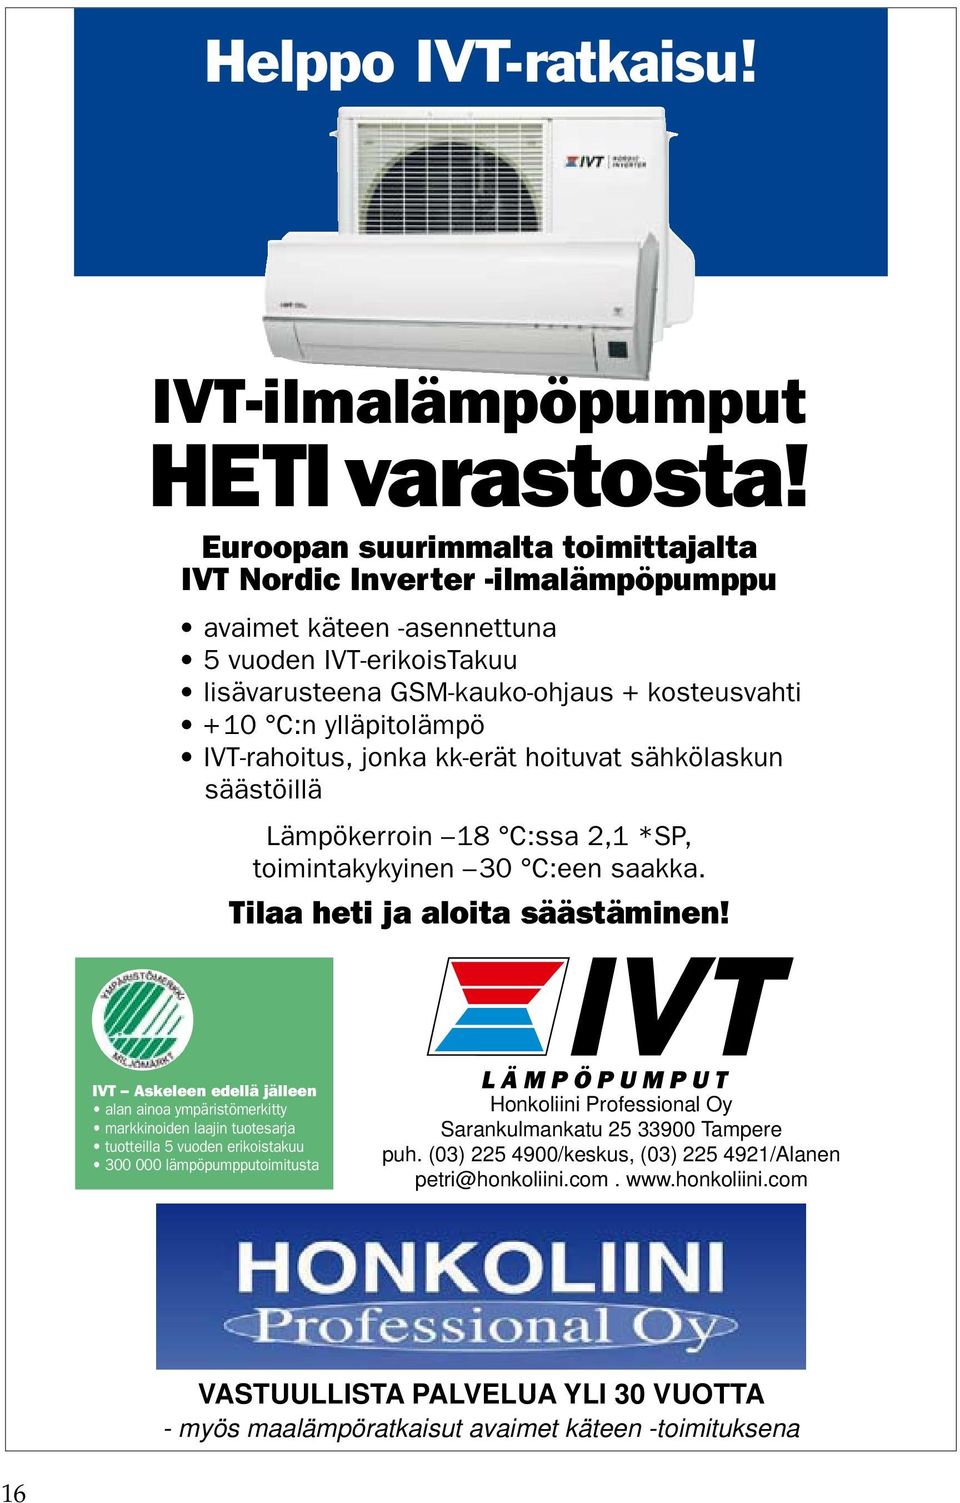 IVT-rahoitus, jonka kk-erät hoituvat sähkölaskun säästöillä Lämpökerroin 18 C:ssa 2,1 *SP, toimintakykyinen 30 C:een saakka. Tilaa heti ja aloita säästäminen! www.ivt.